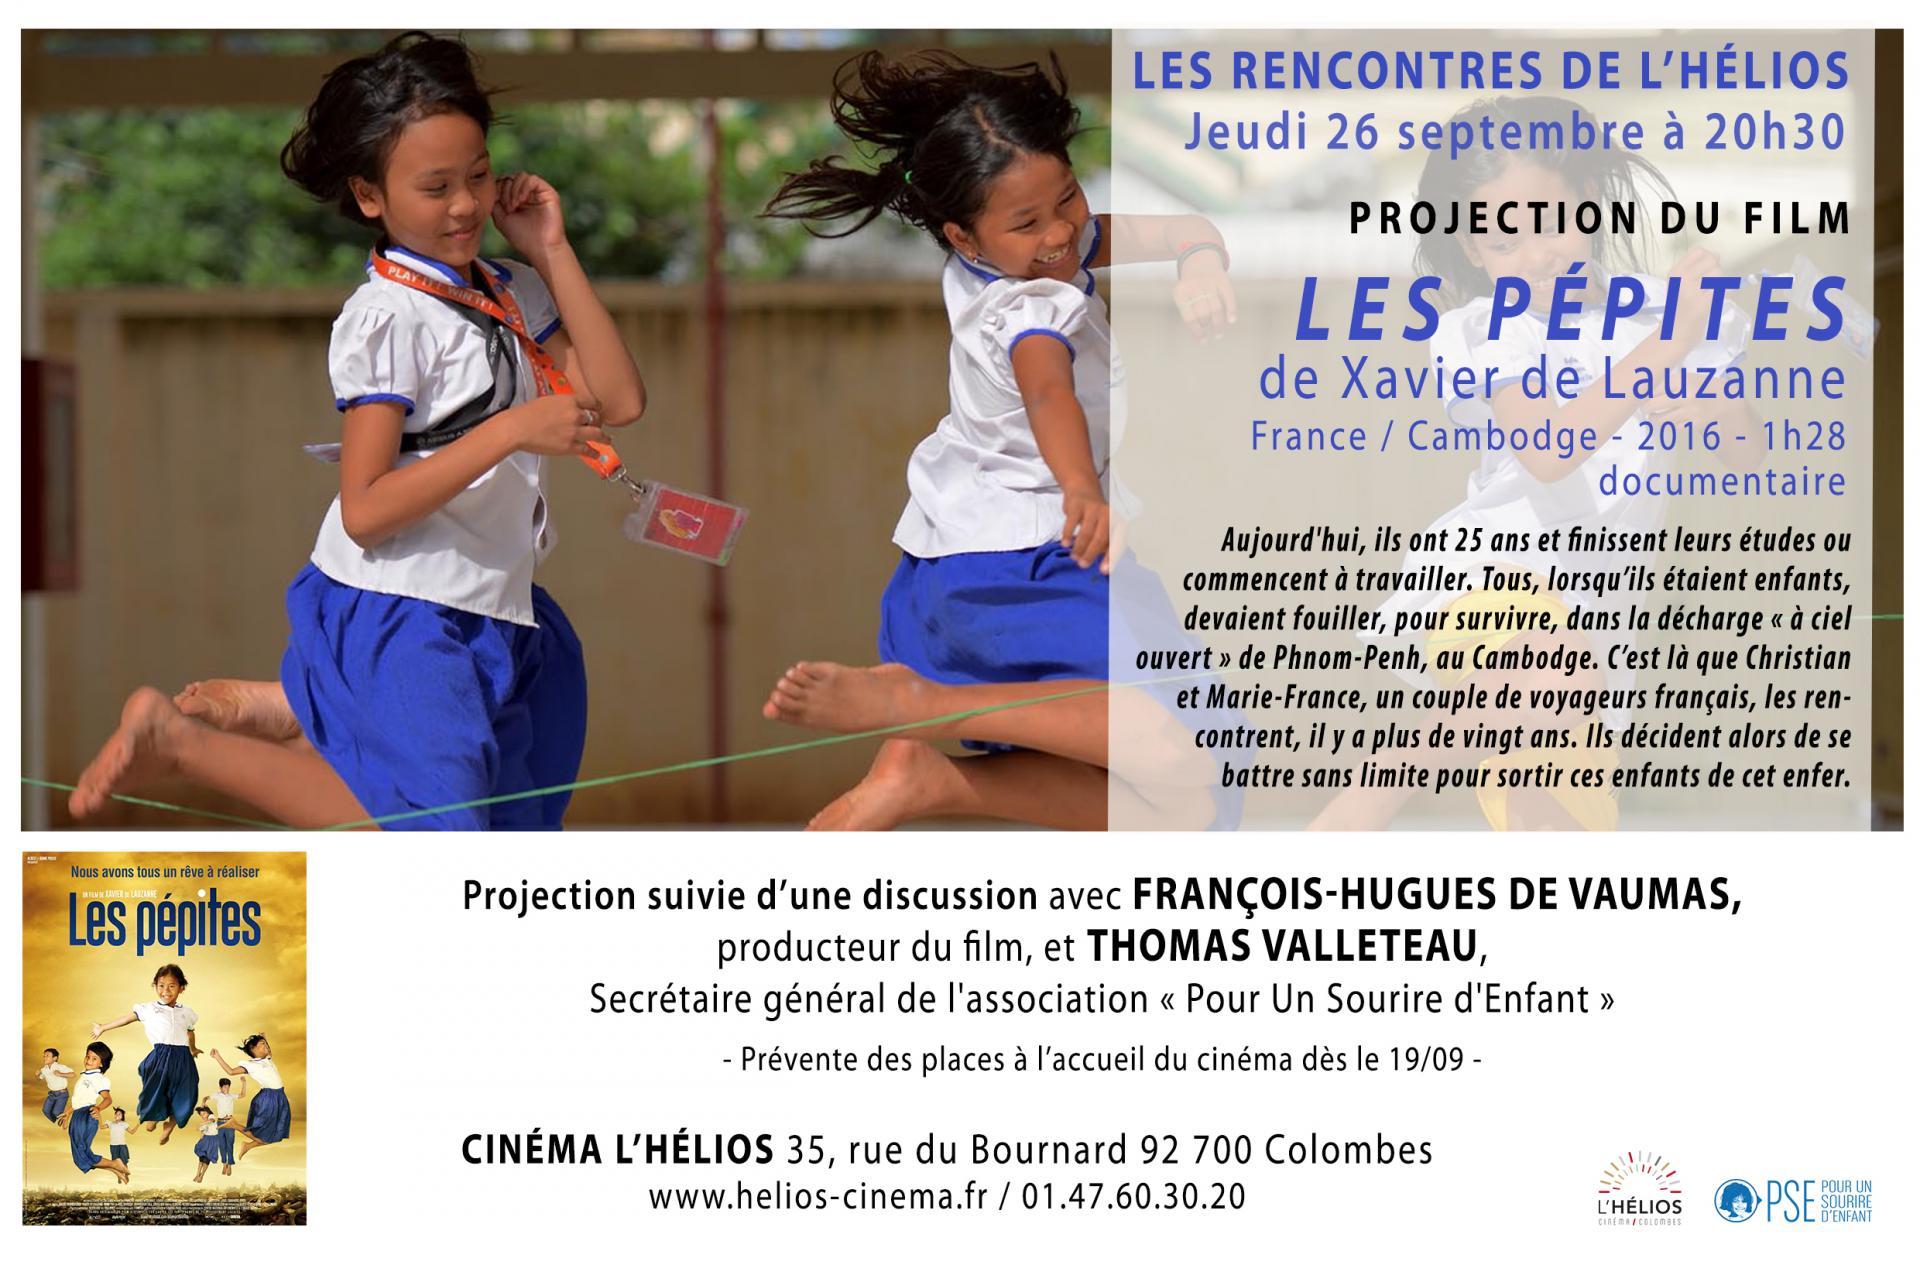 Affiche projection du film "Les Pépites" à Colombes